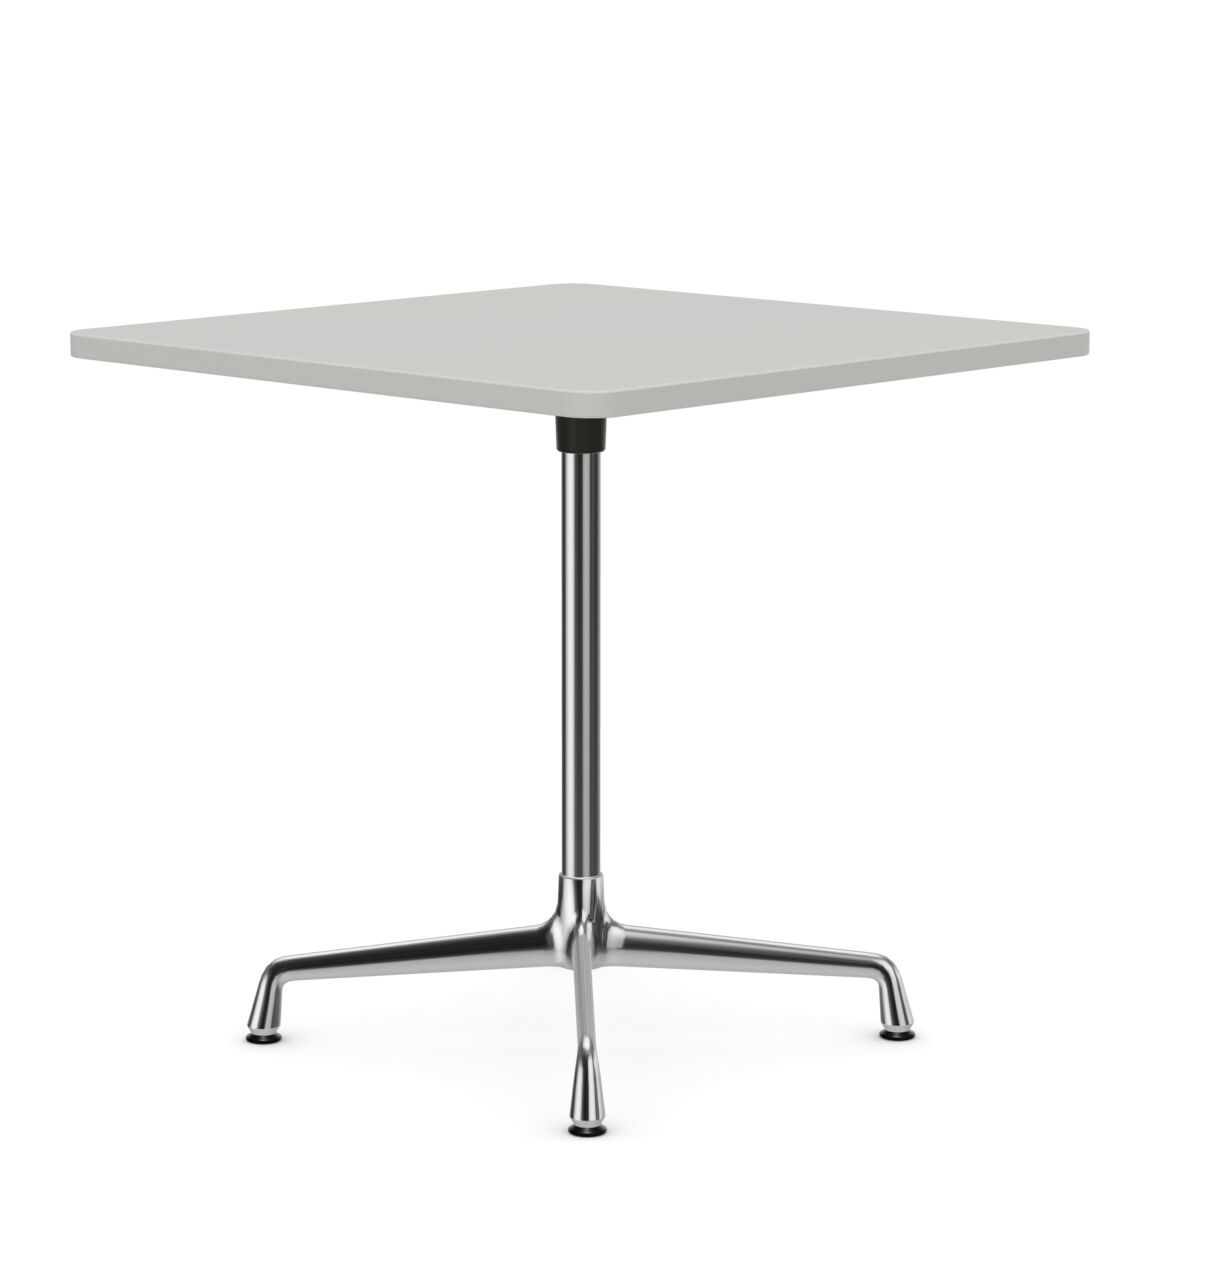 Tisch Eames Contract Table Tischplatte Quadratisch Melamin Weiss Universalfuß Und Standrohr Aluminium Verchromt